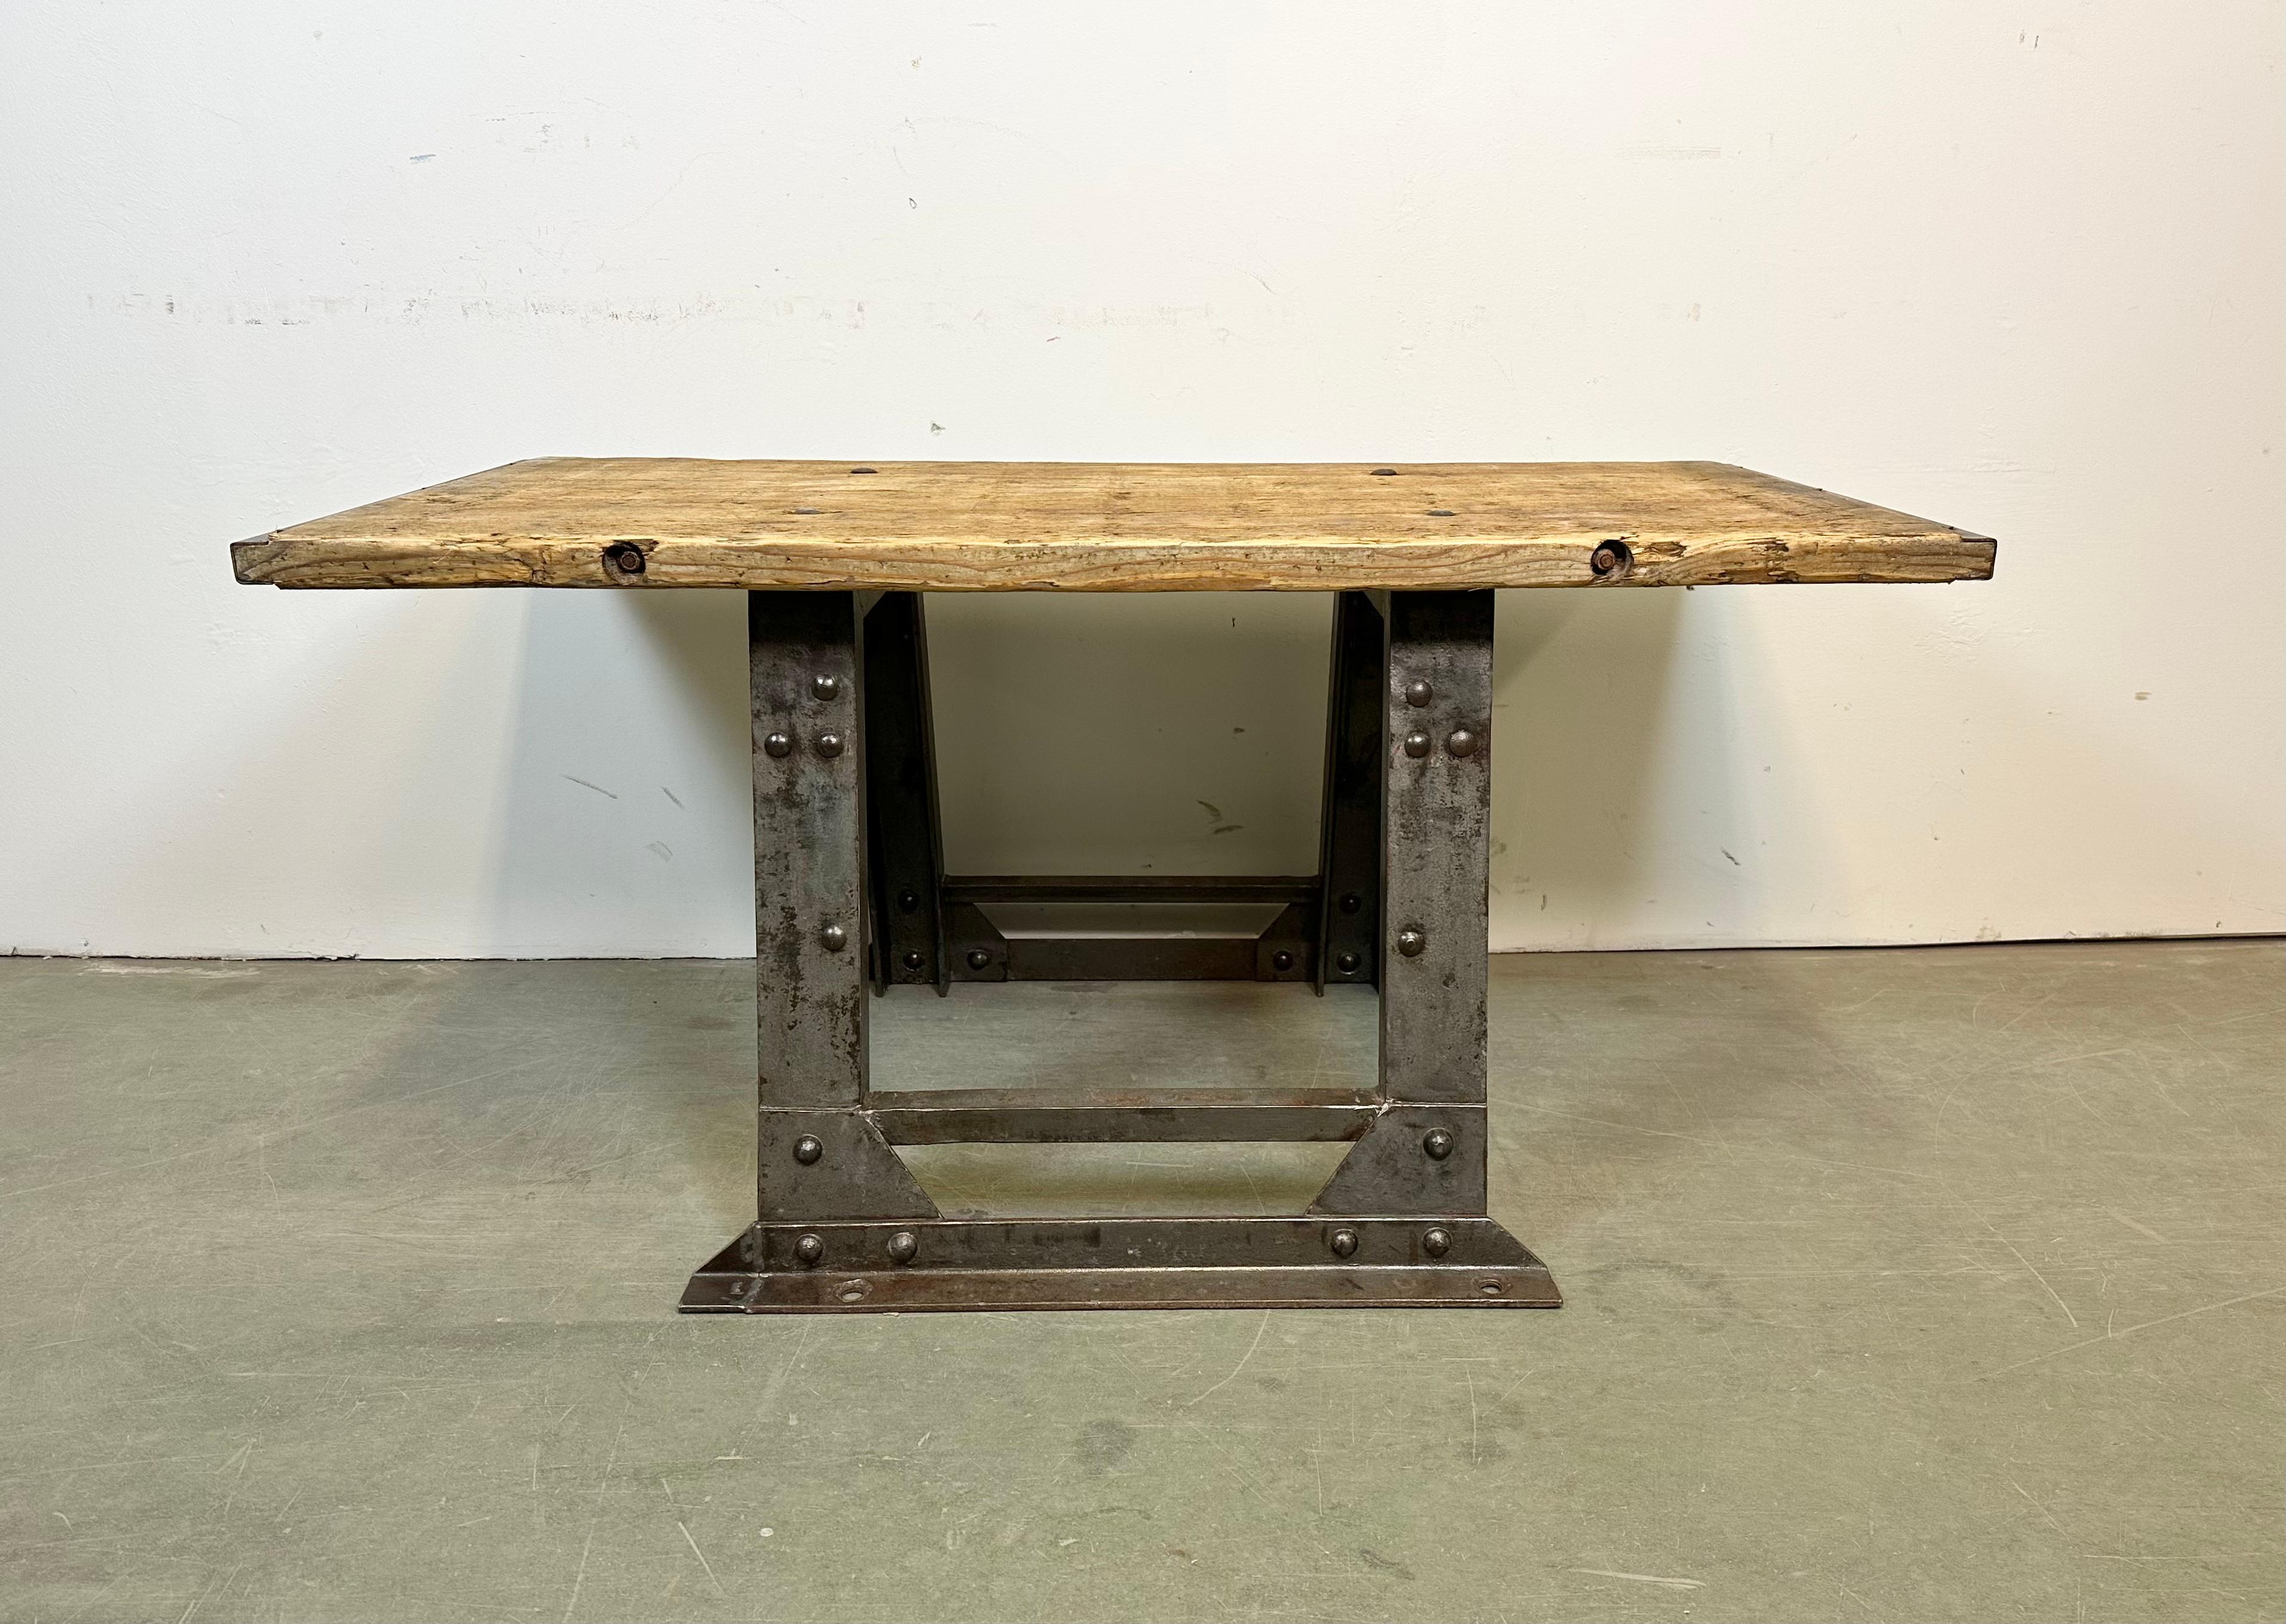 - Table basse industrielle vintage fabriquée dans les années 1960 
- Fabriqué en bois massif et en fer riveté 
- Le poids de la table est de 52 kg.